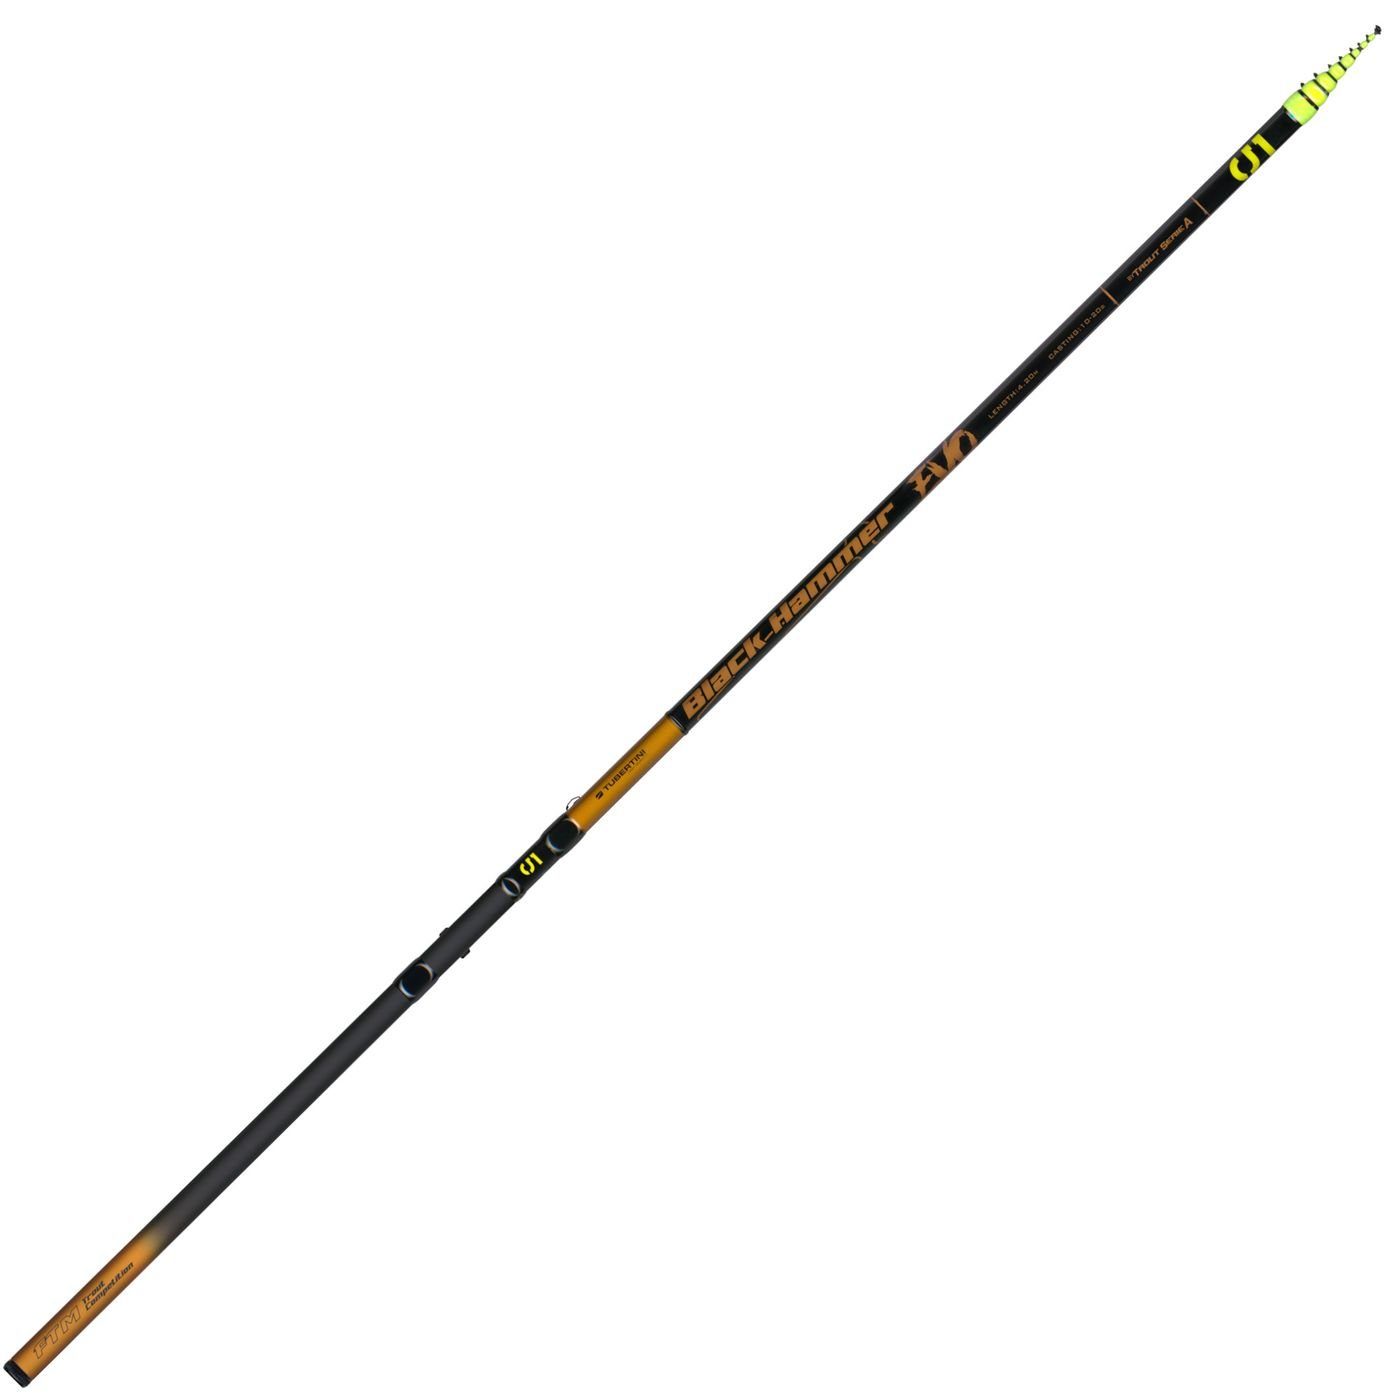 Tubertini Forellenrute Black Hammer / Forellenrute 5 10-20g 4,20m - Evo